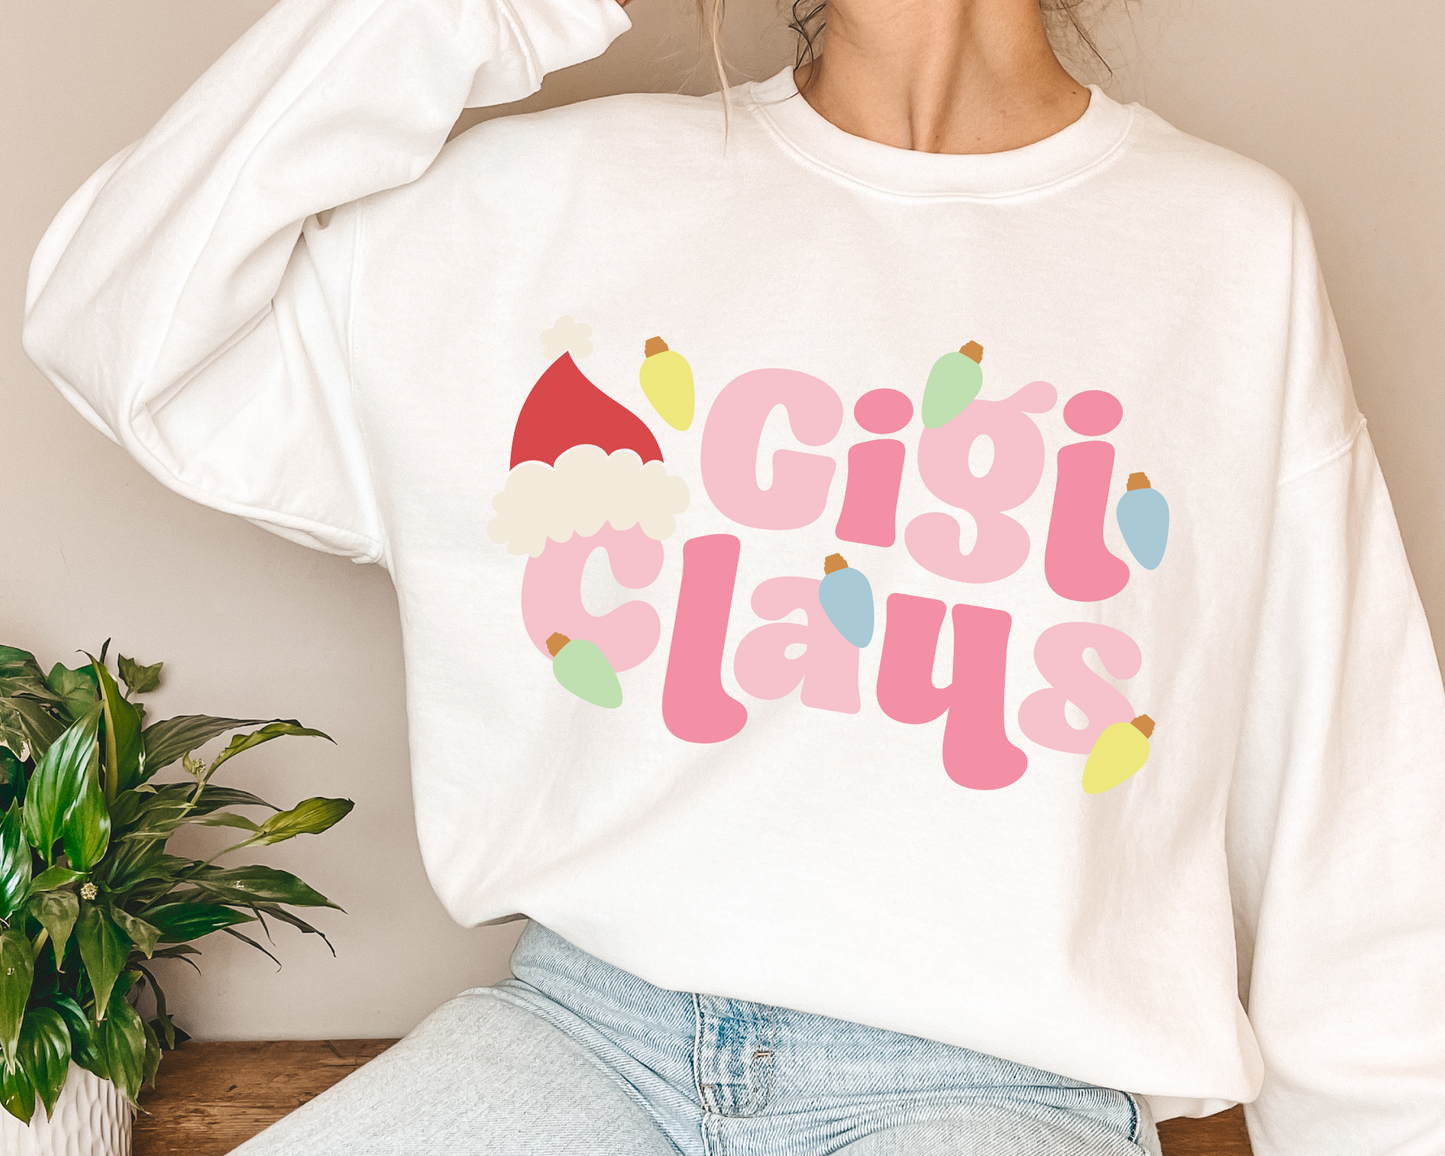 FREE Gigi Claus SVG | Gigi Christmas SVG